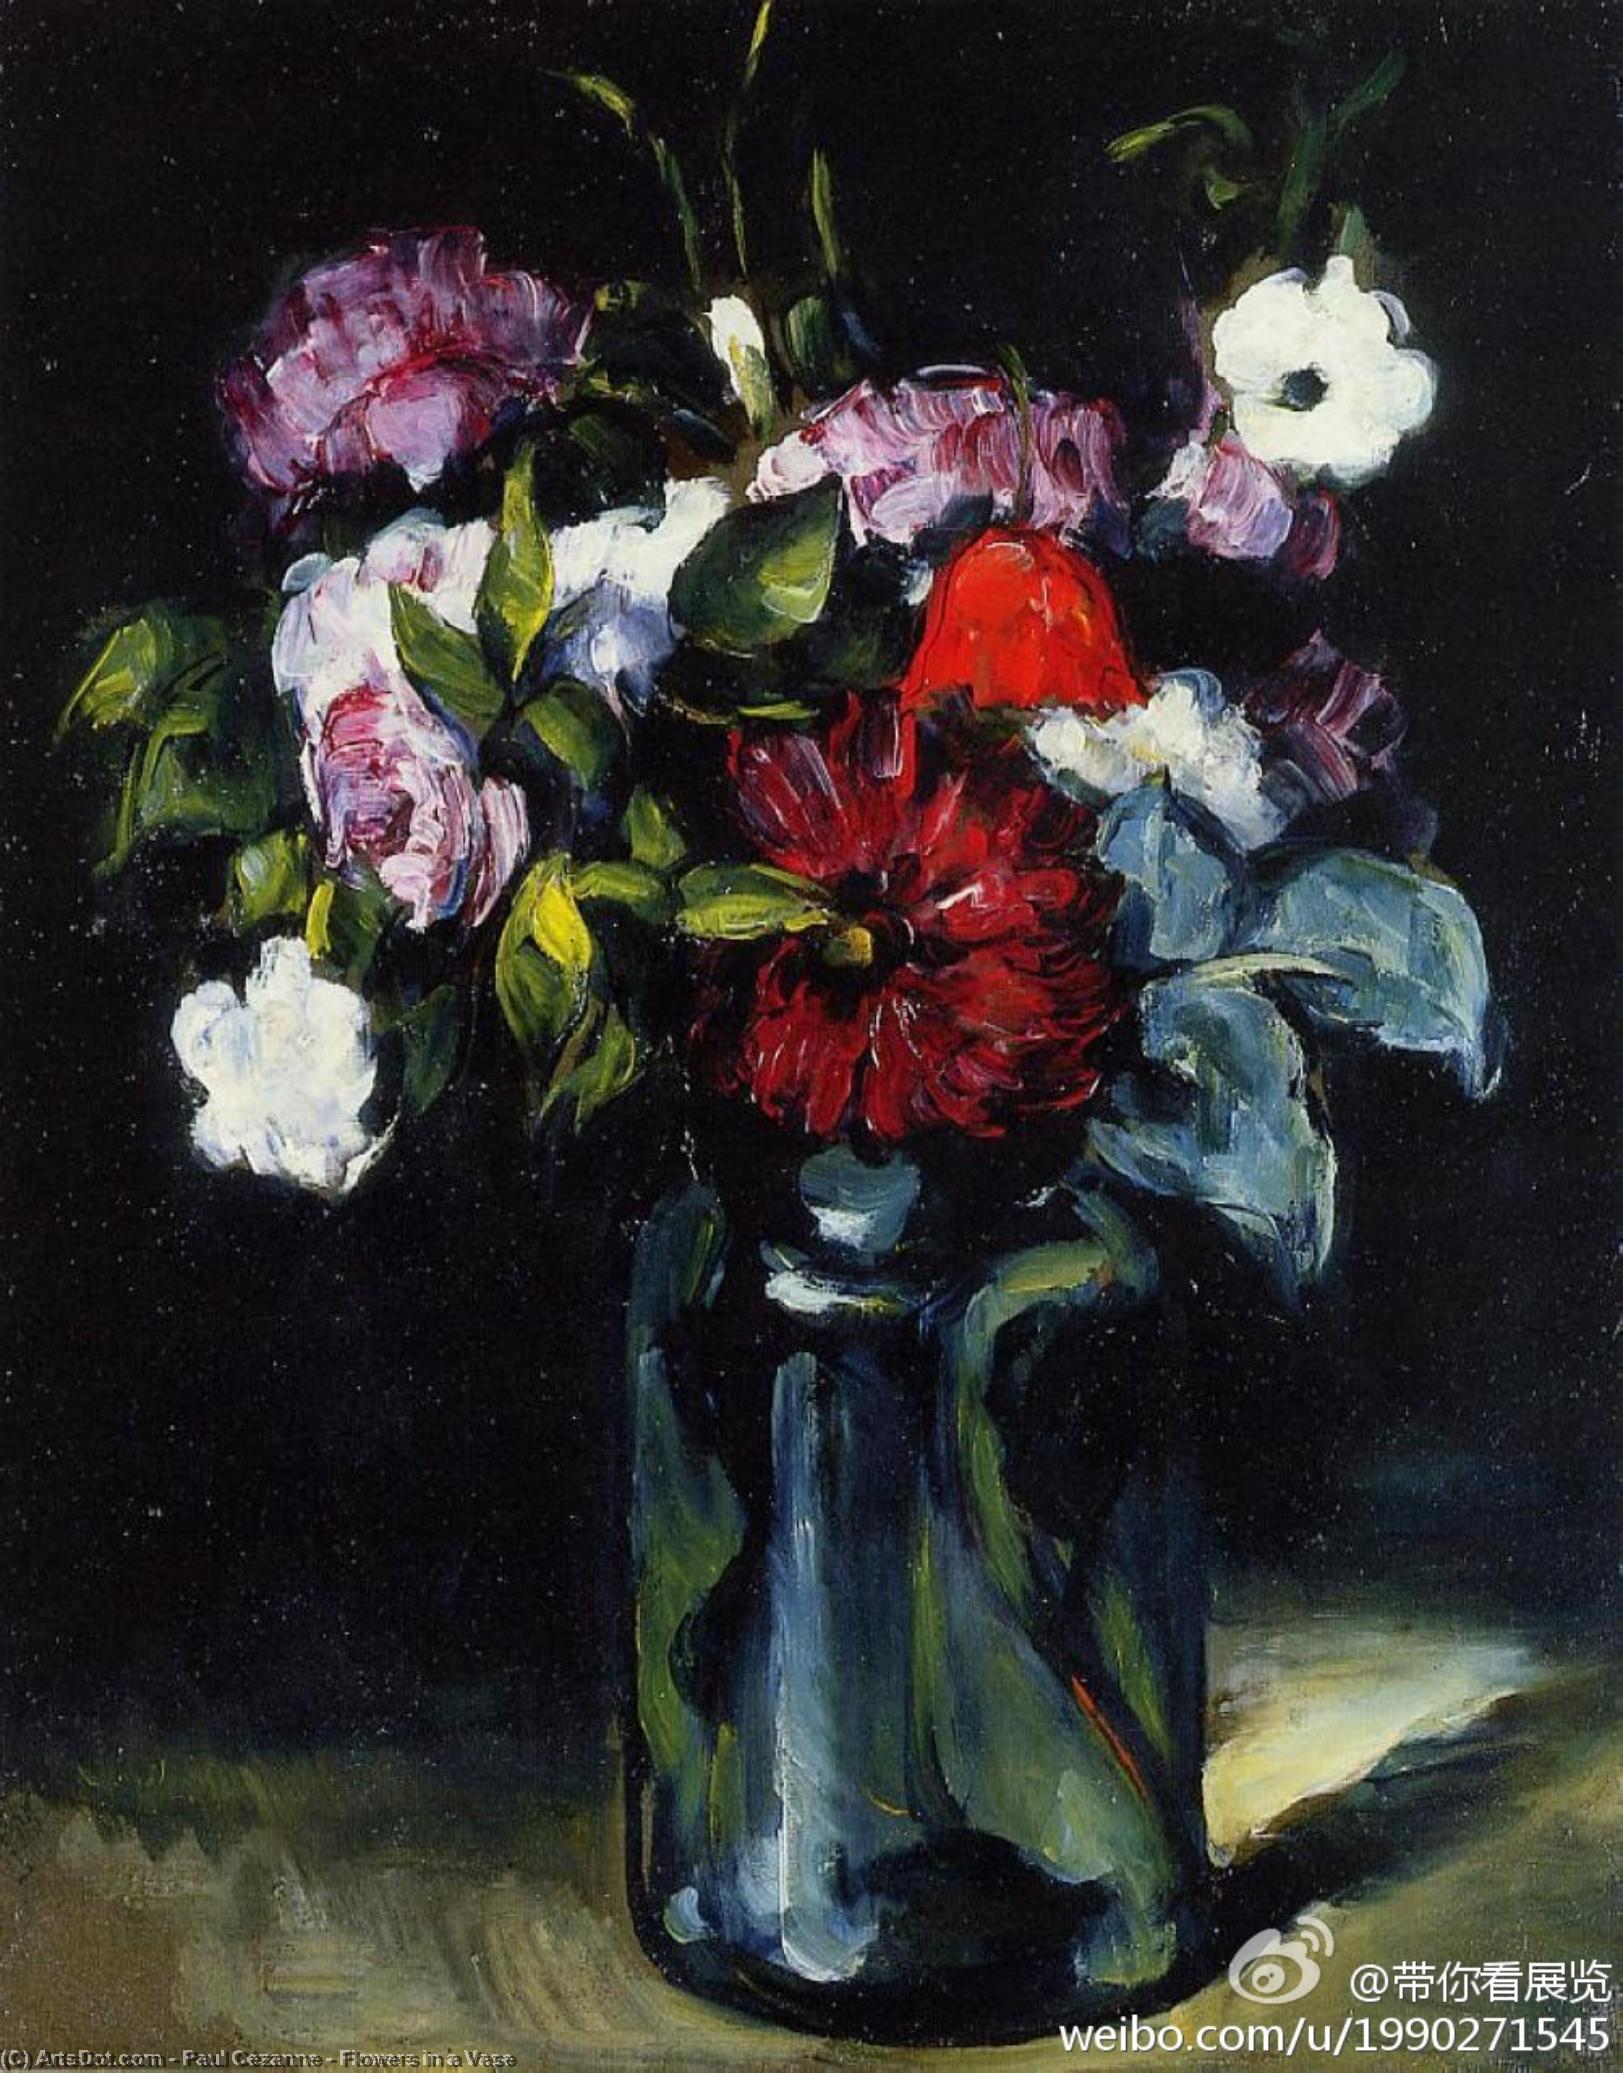 WikiOO.org - Encyclopedia of Fine Arts - Maľba, Artwork Paul Cezanne - Flowers in a Vase